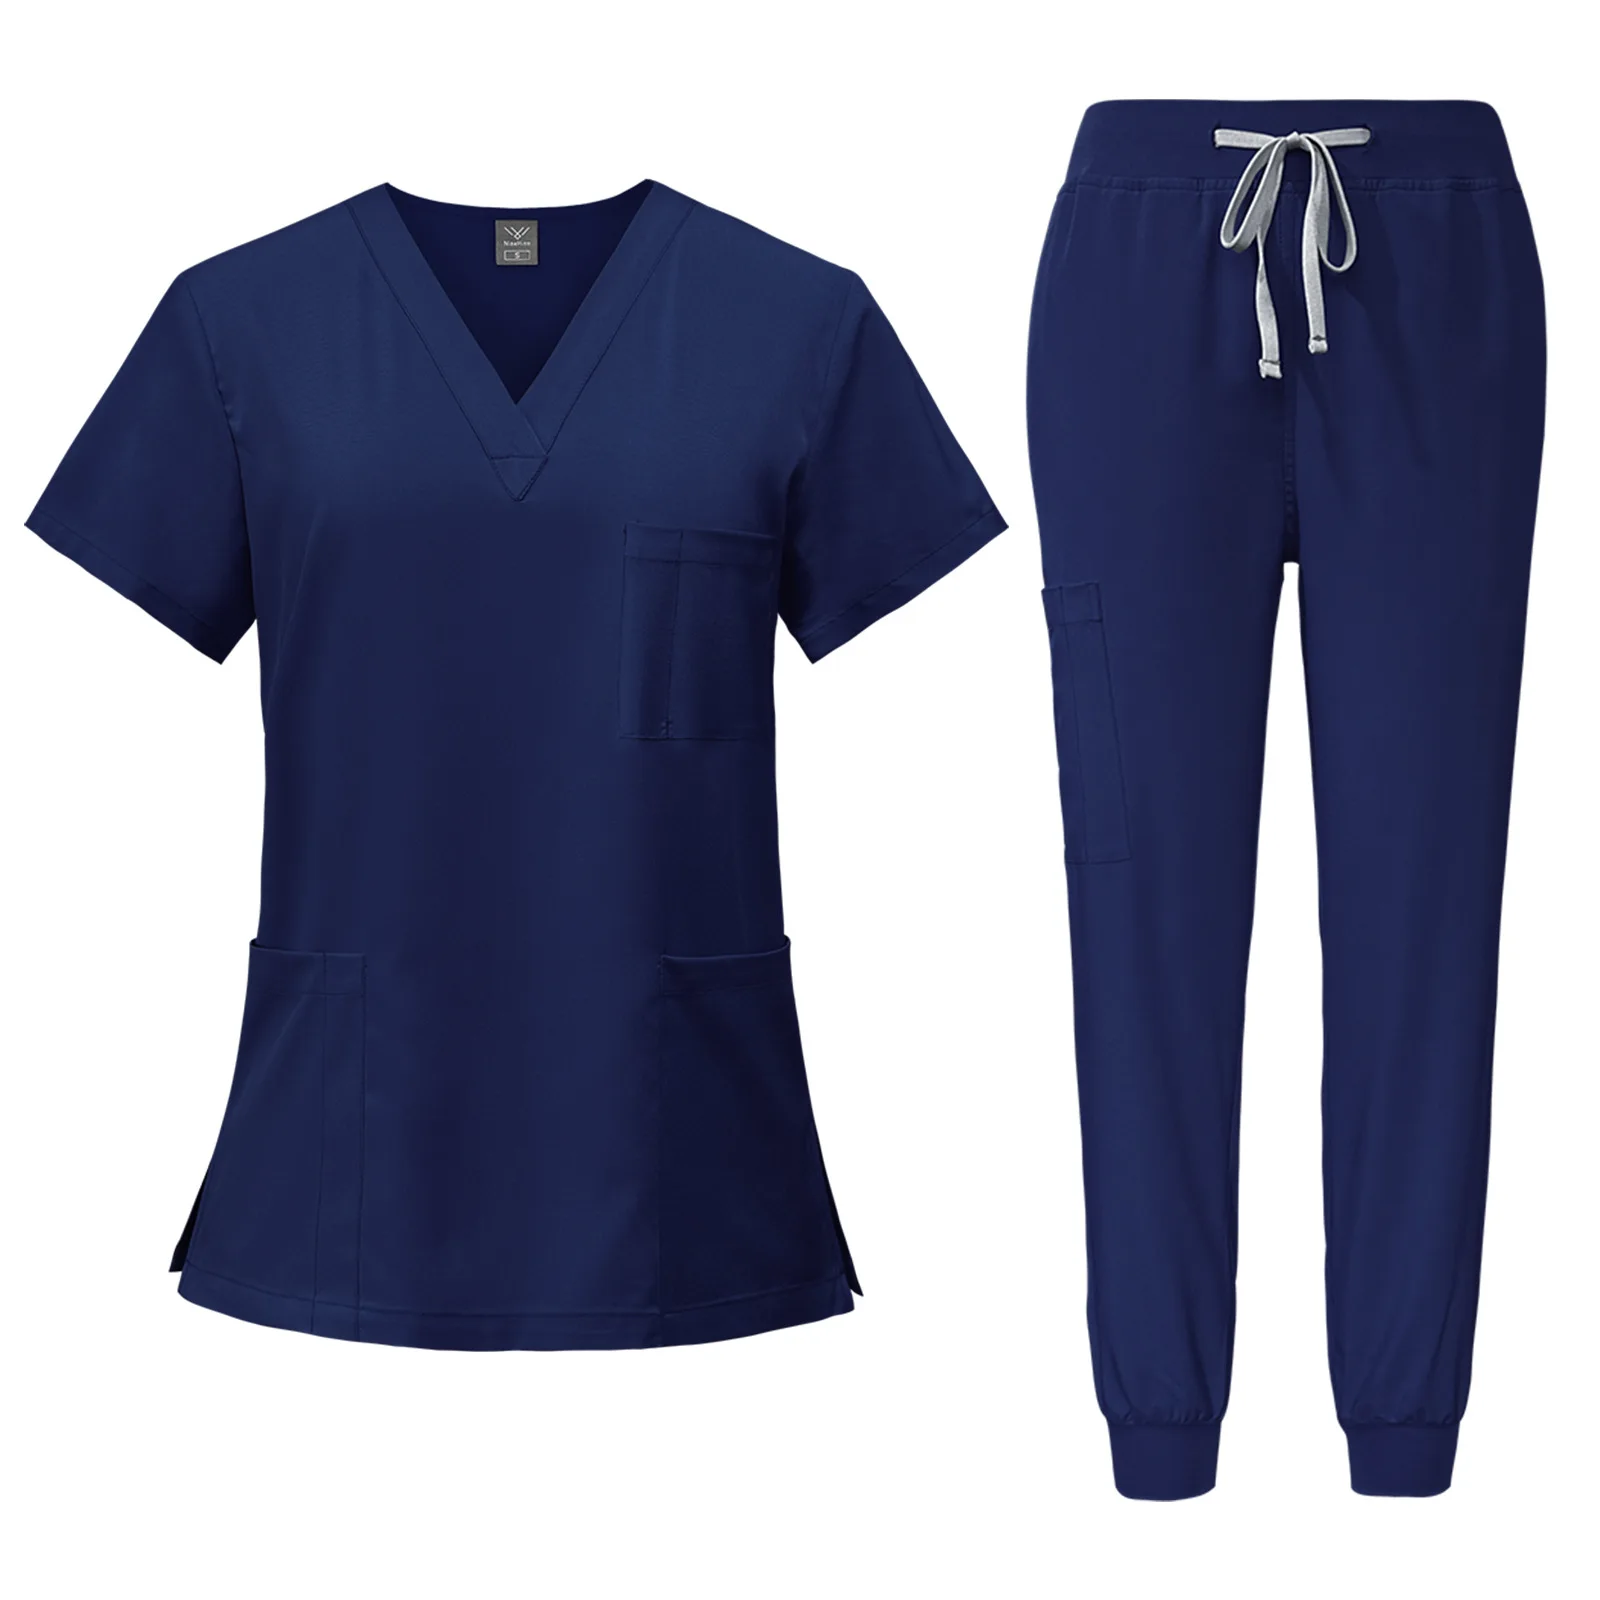 유니섹스 화이트 병원 유니폼, 간호사 뷰티 치과 살롱 작업복, 맞춤형 로고 유니폼, 의료 스크럽 조거 세트, 패션